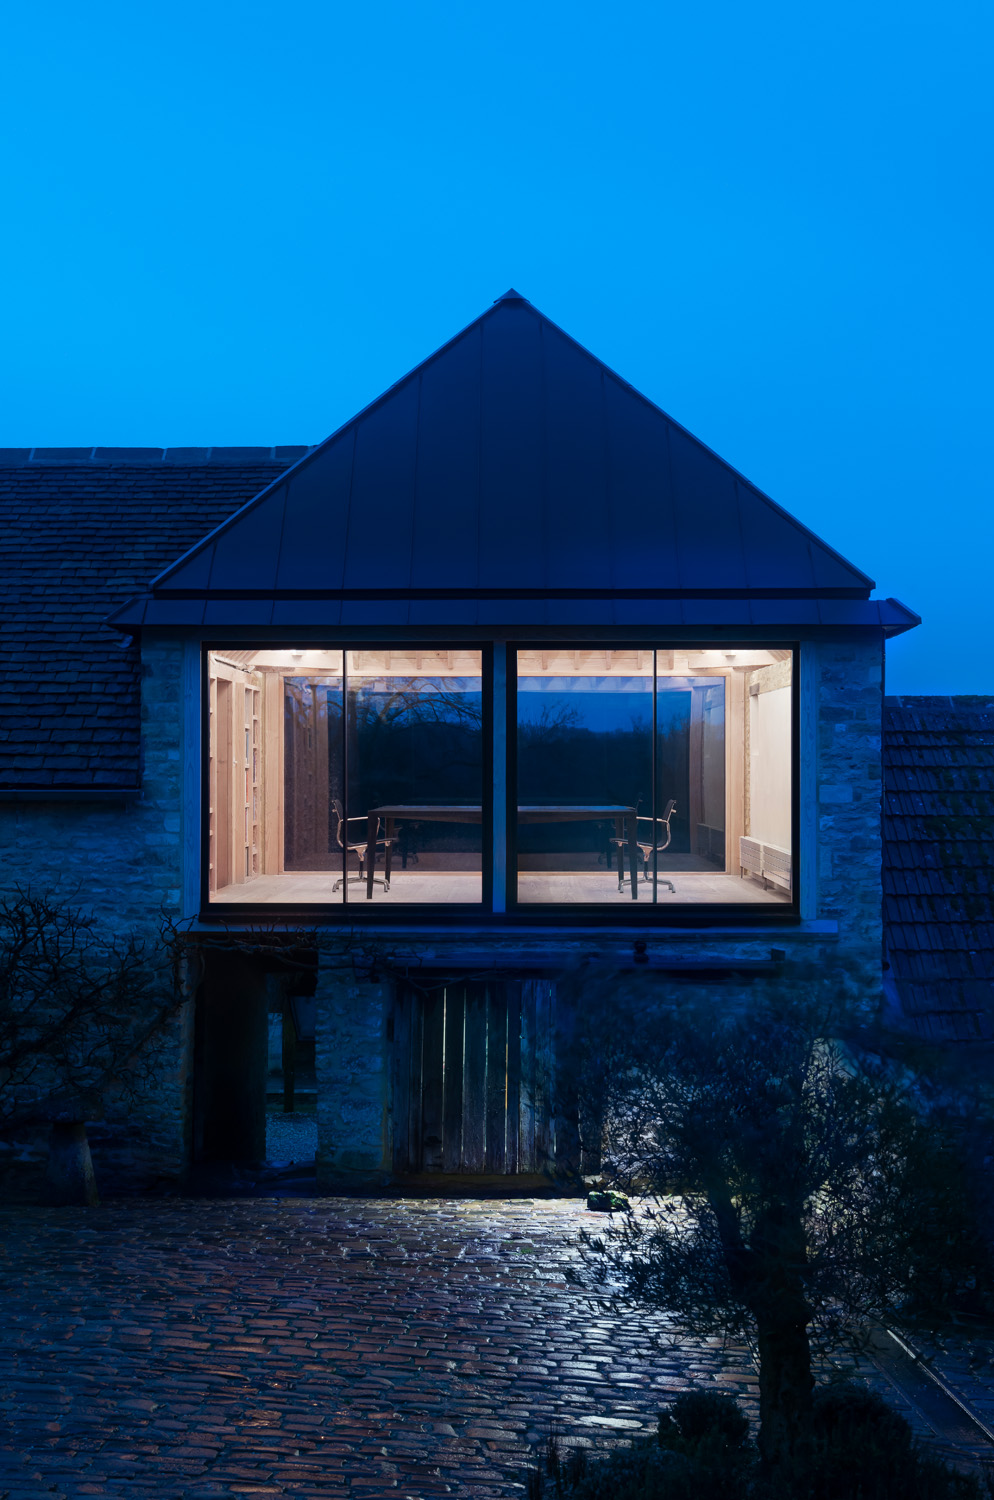 Easter Park Farm Studio by Richard Parr Associates - contemporary architecture design studio in London